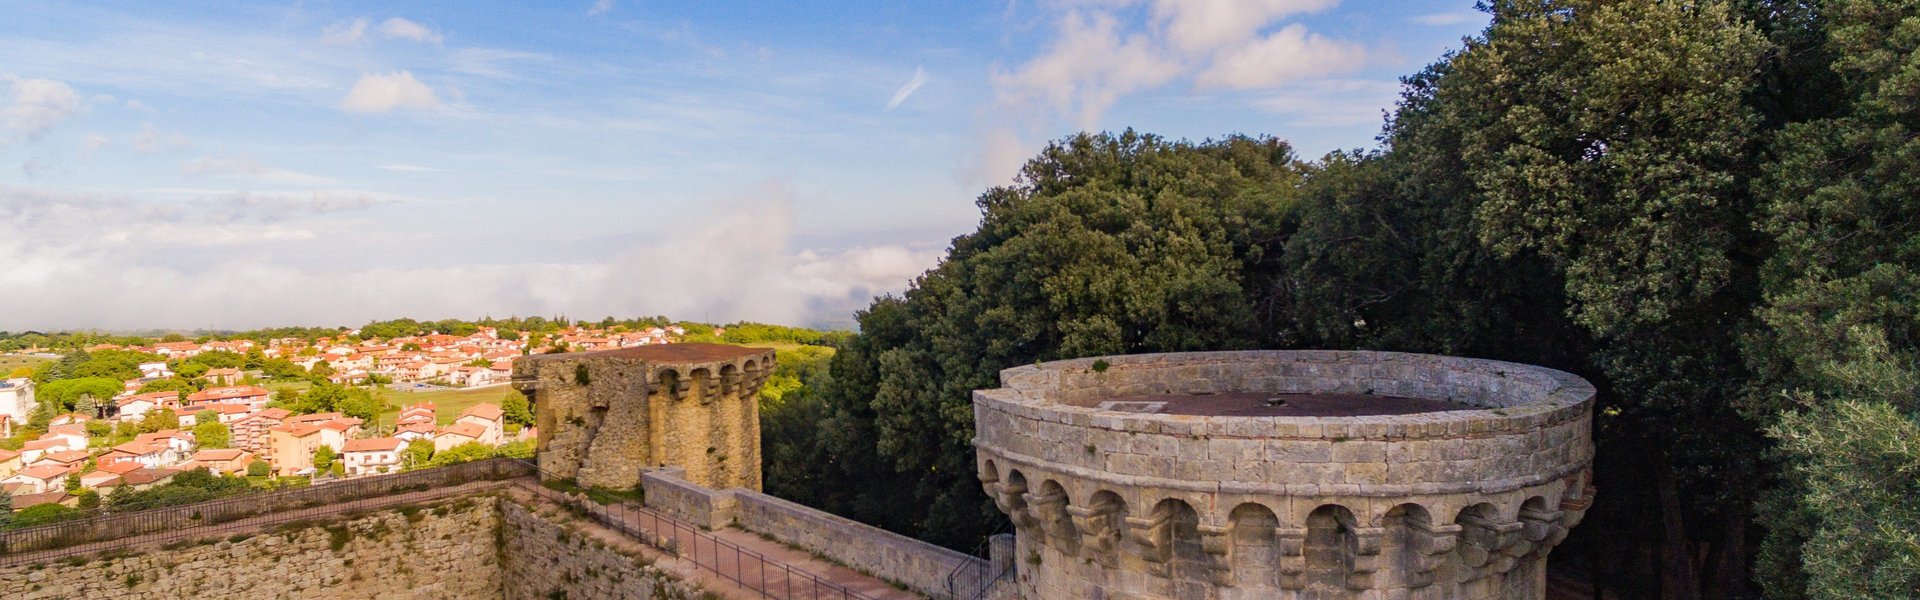 Castello di Sarteano. Vista dall'alto